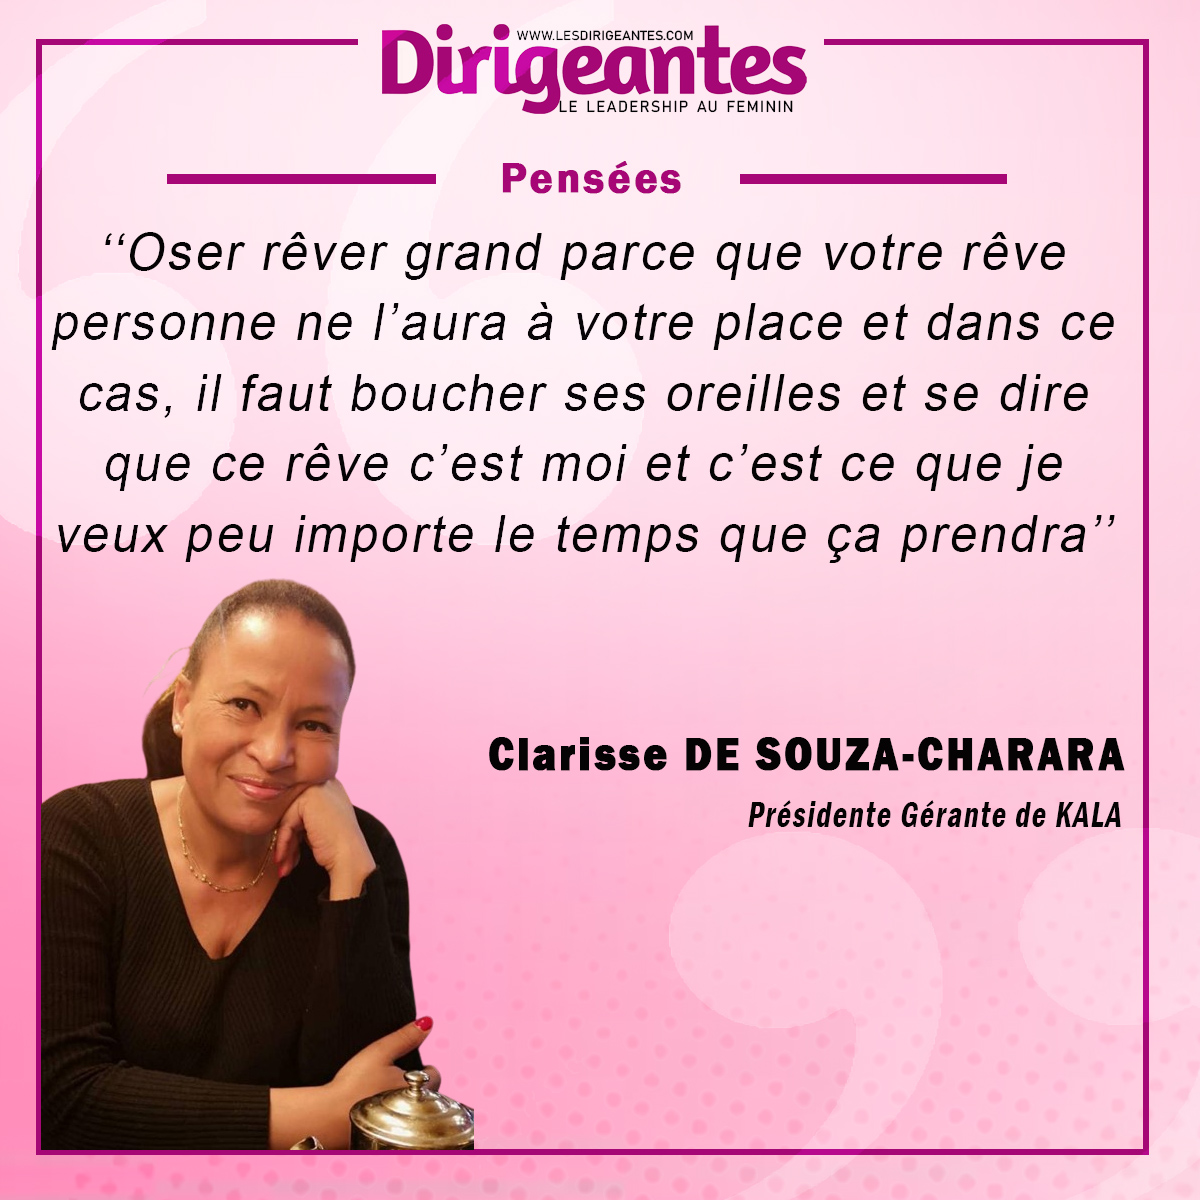 Clarisse DE SOUZA-CHARARA, Présidente Gérante de KALA